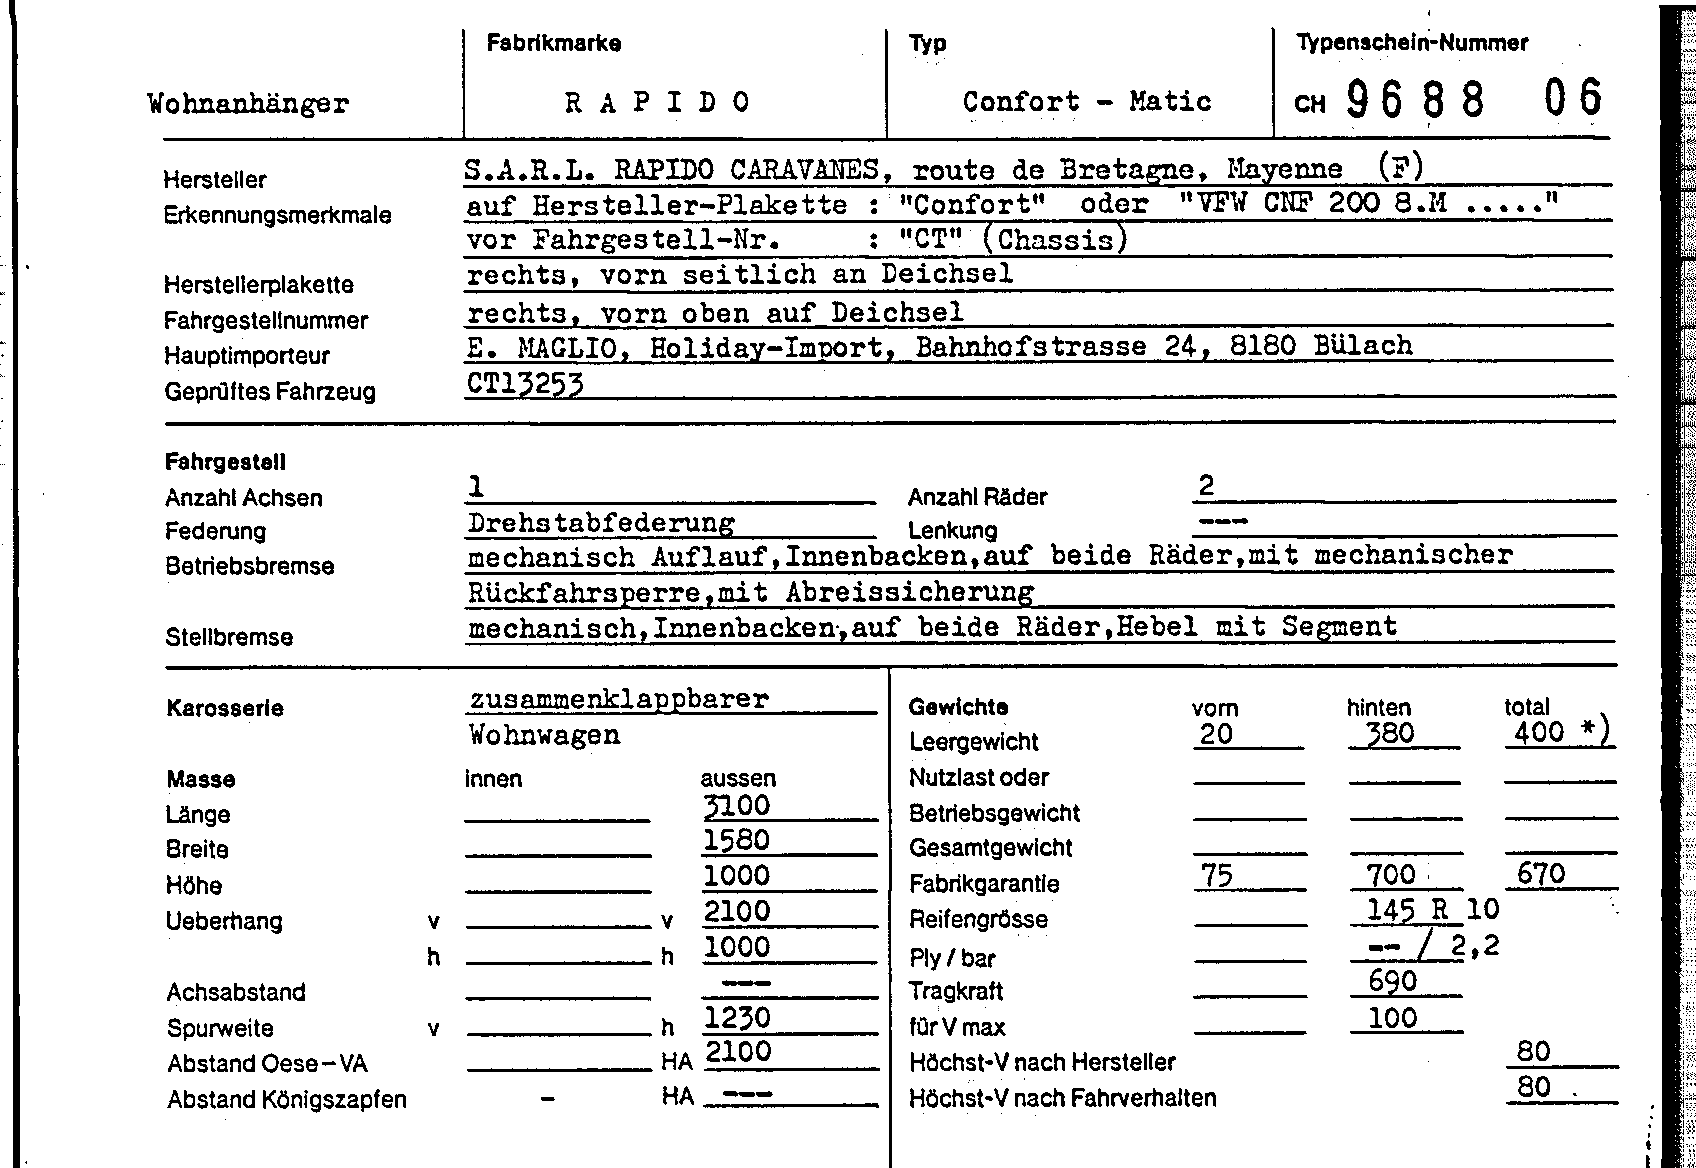 Swiss Certificate of Conformity 968806 German Page 1 (TG.DE.968806.1.png)